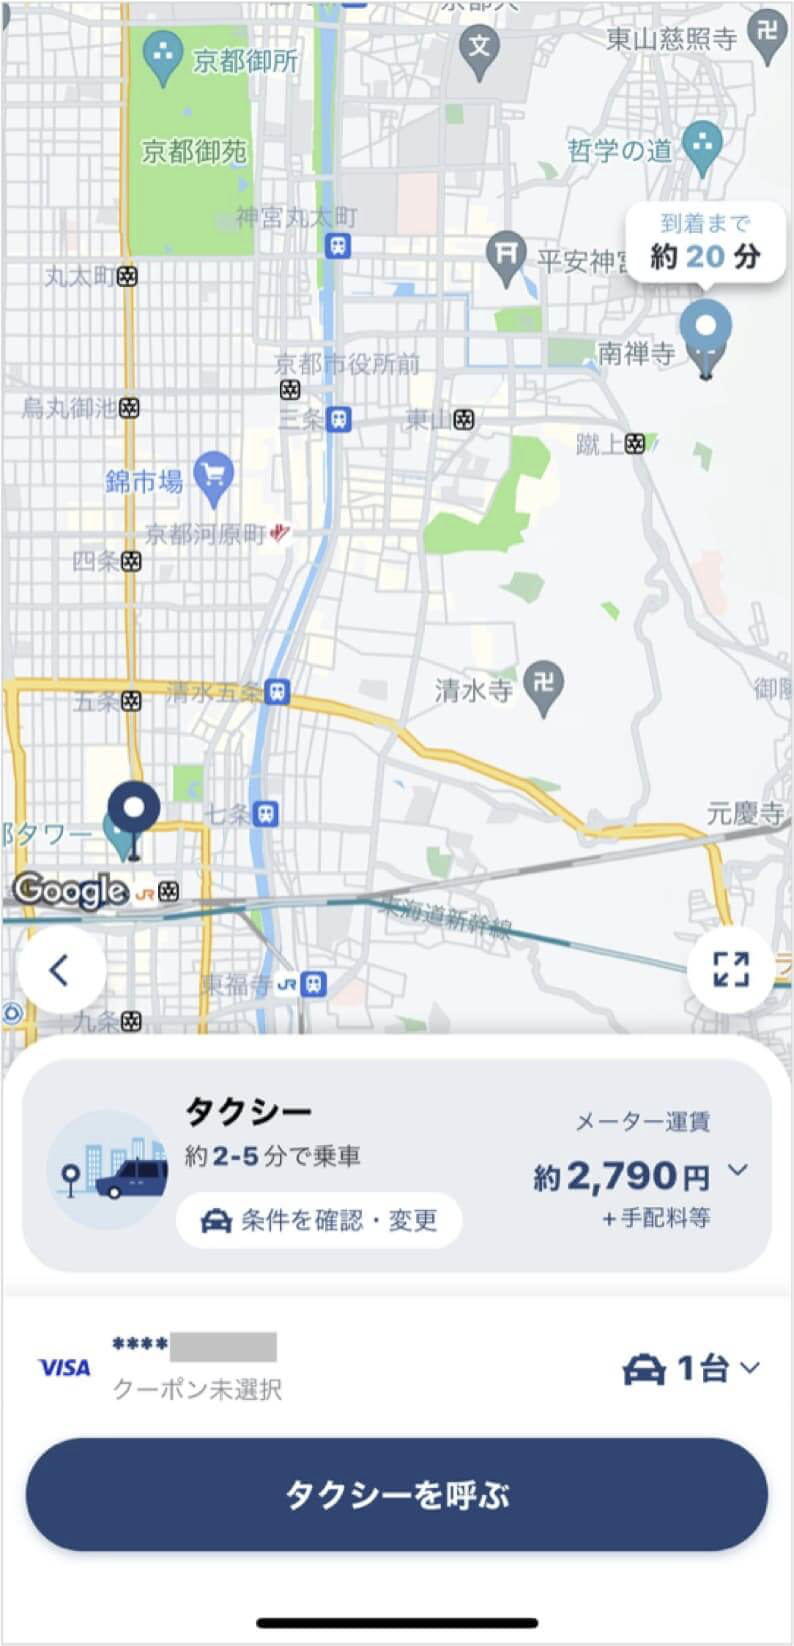 京都駅から南禅寺までのタクシー料金・所要時間まとめ